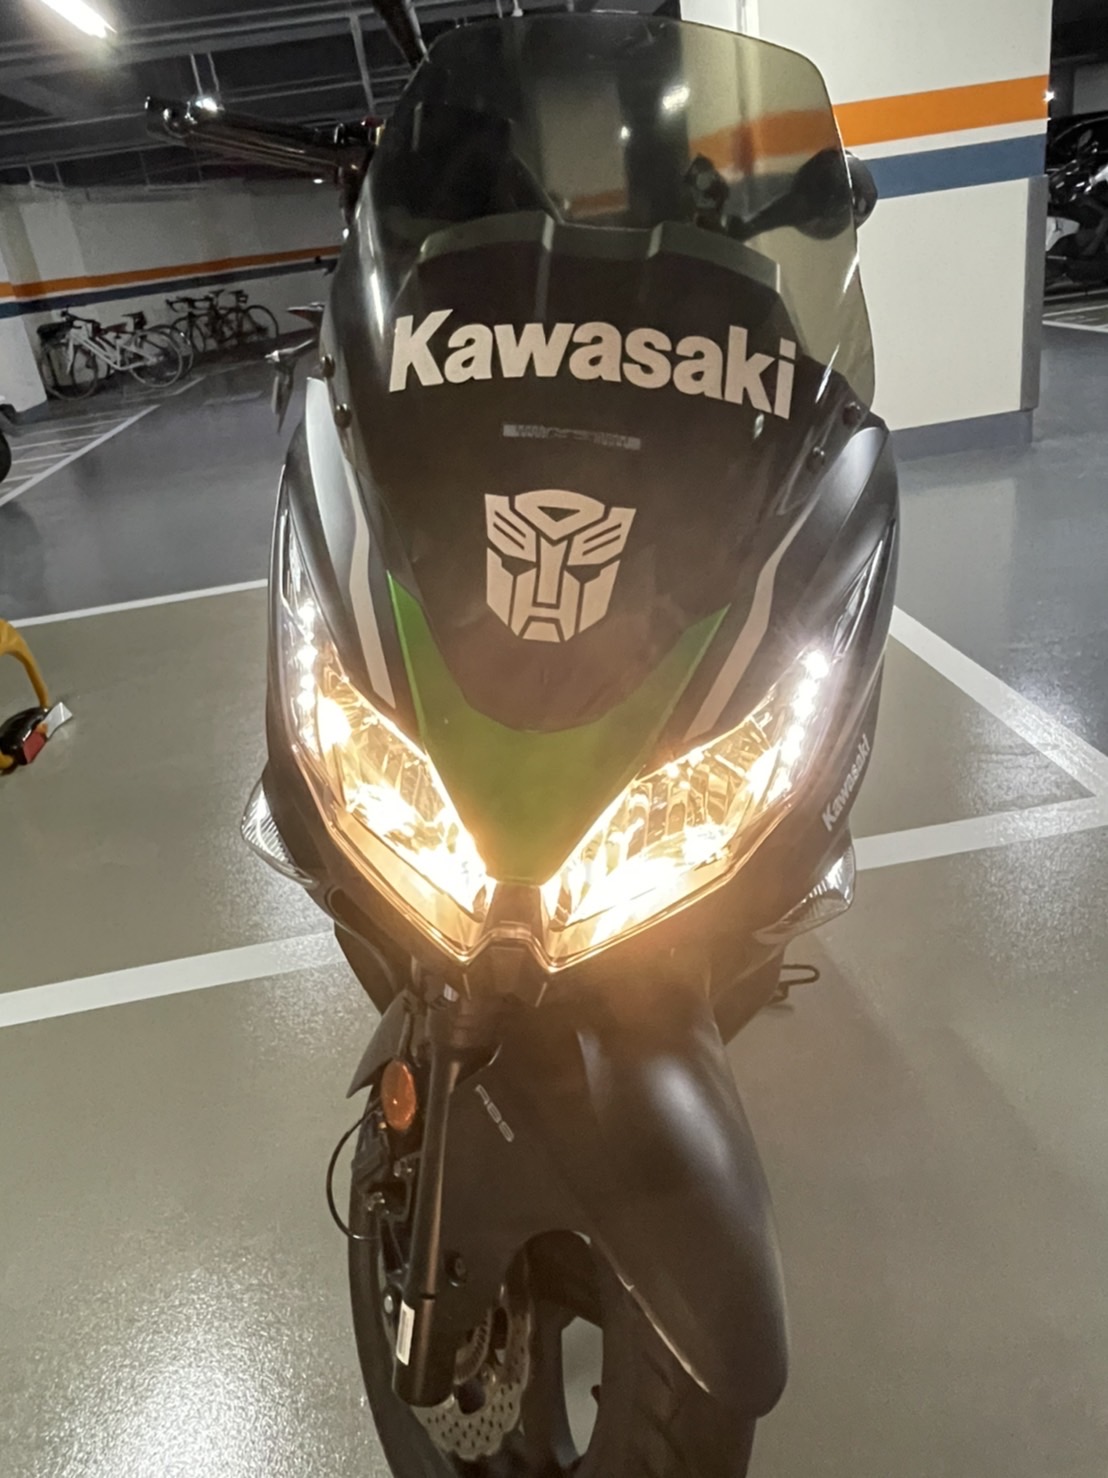 KAWASAKI J300 - 中古/二手車出售中 Kawasaki J300 好騎好代步僅跑10500km | 個人自售